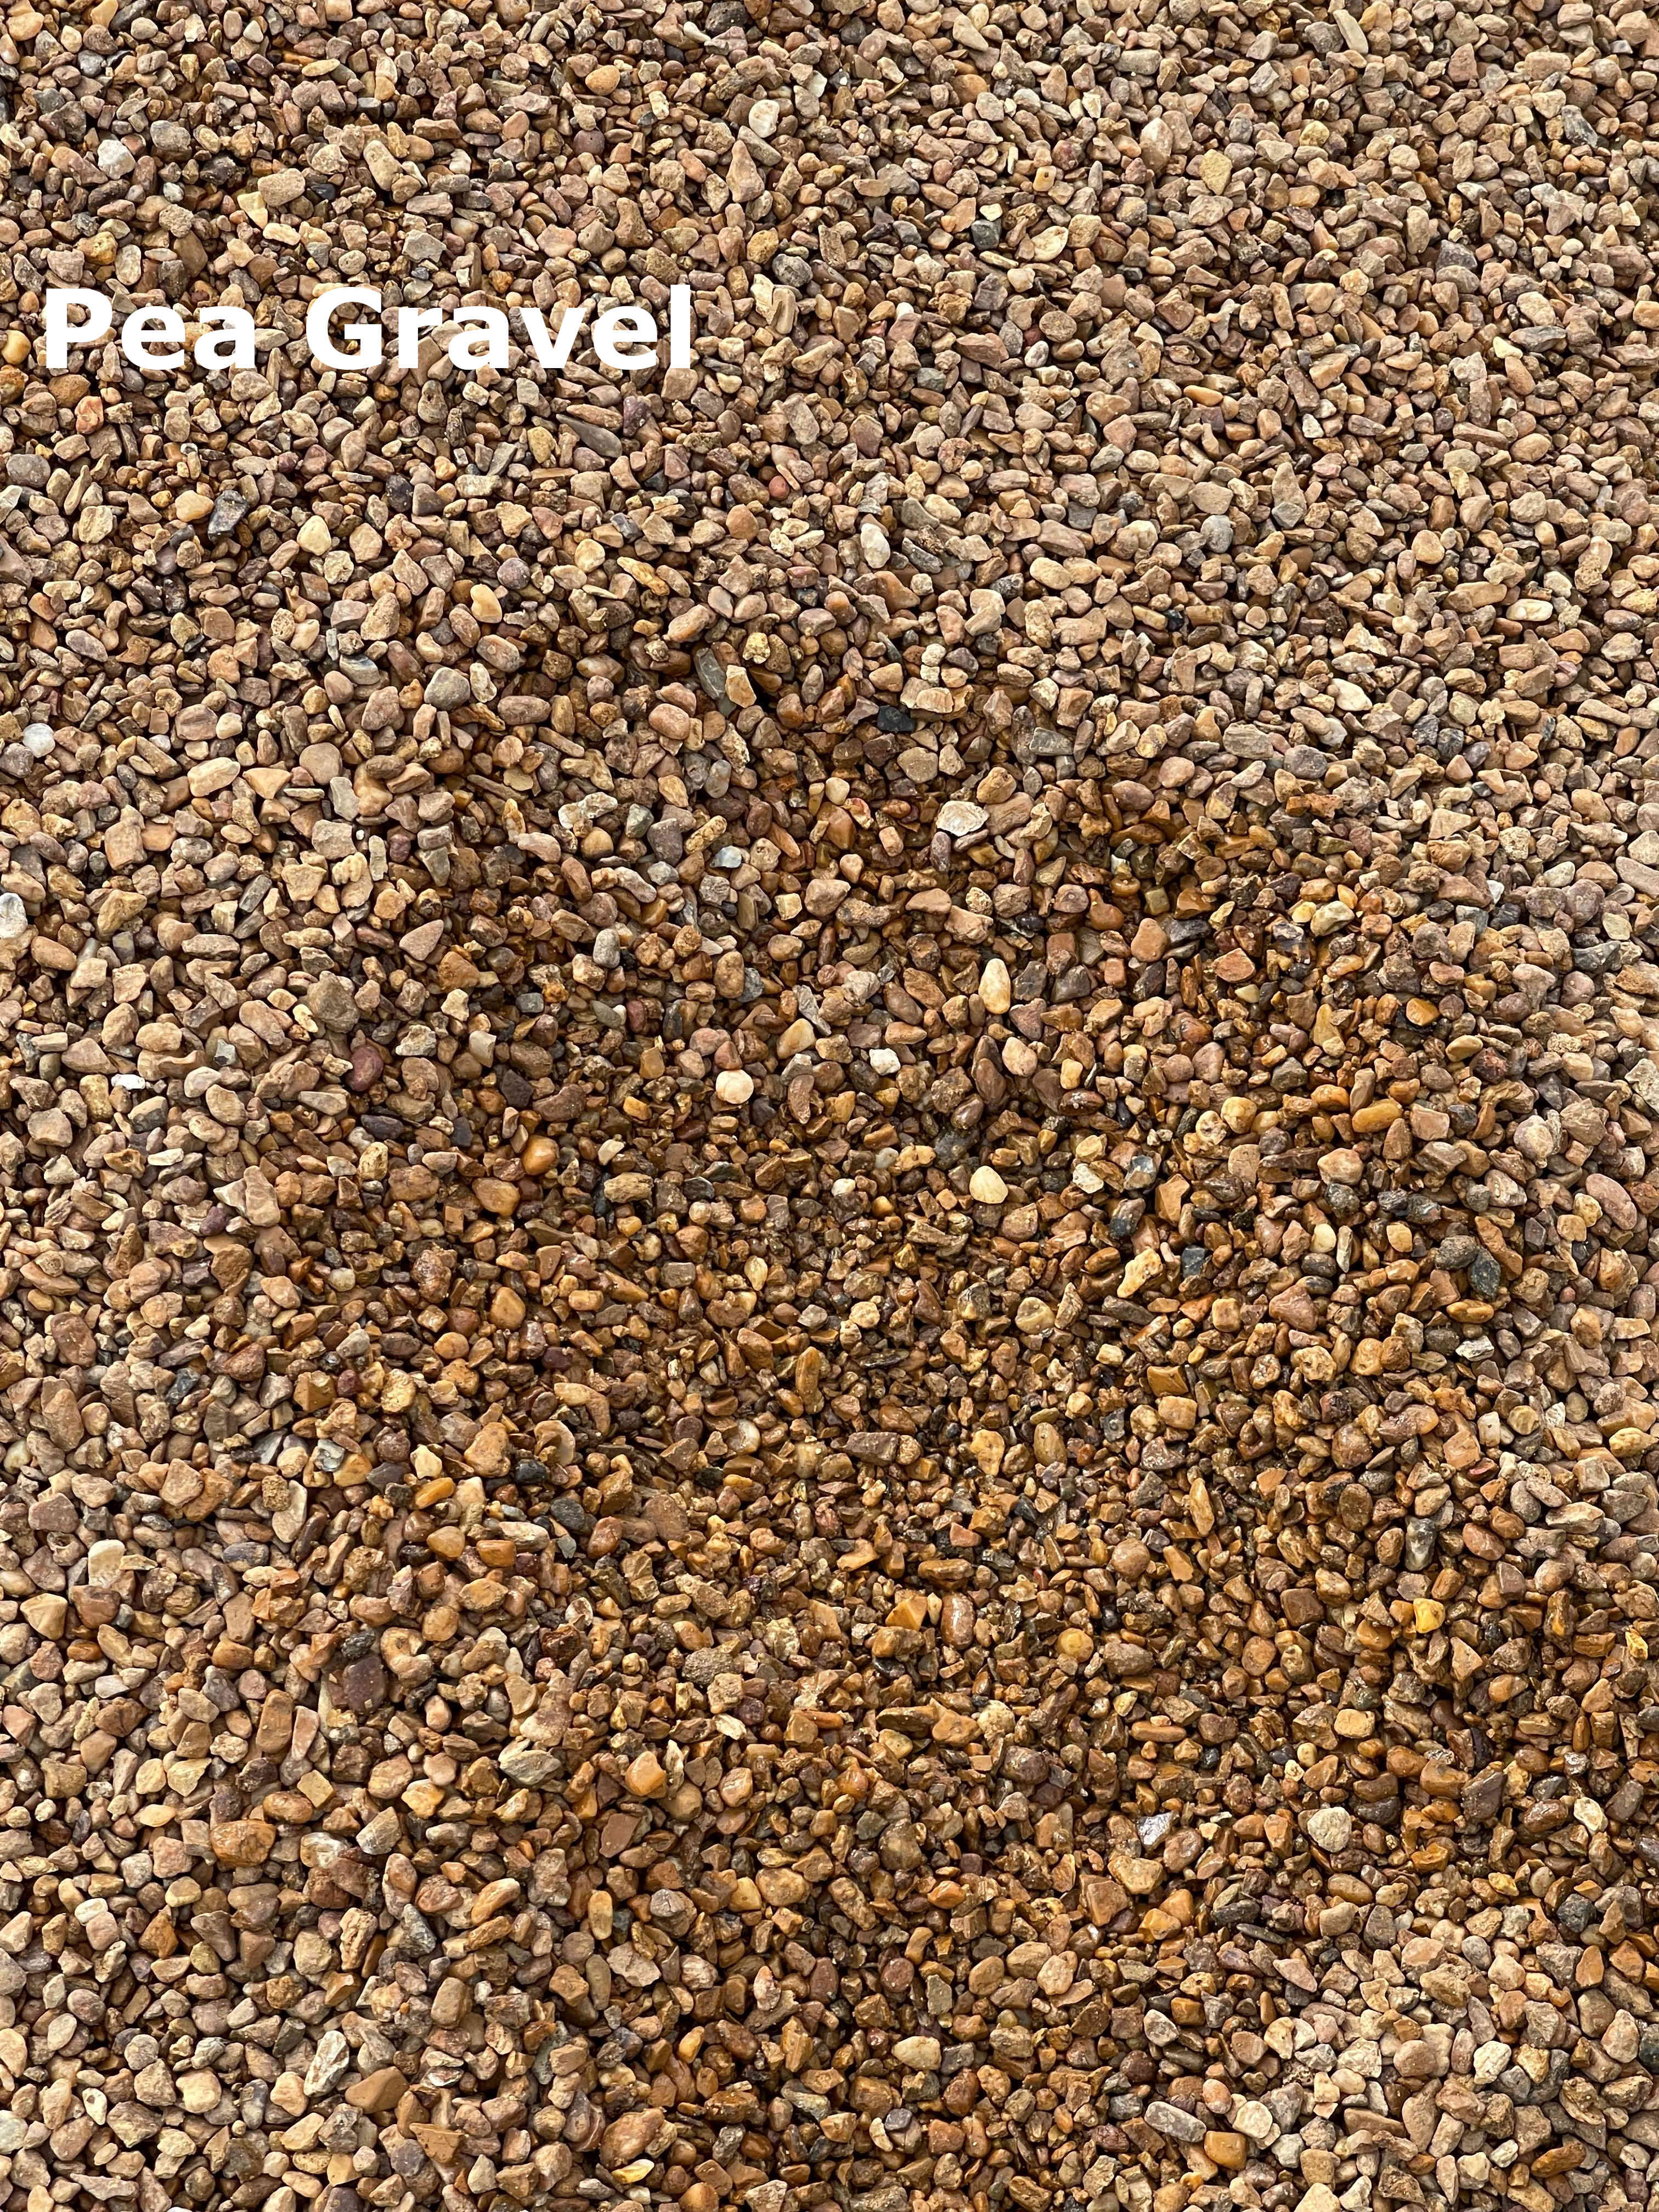 Pea-Gravel